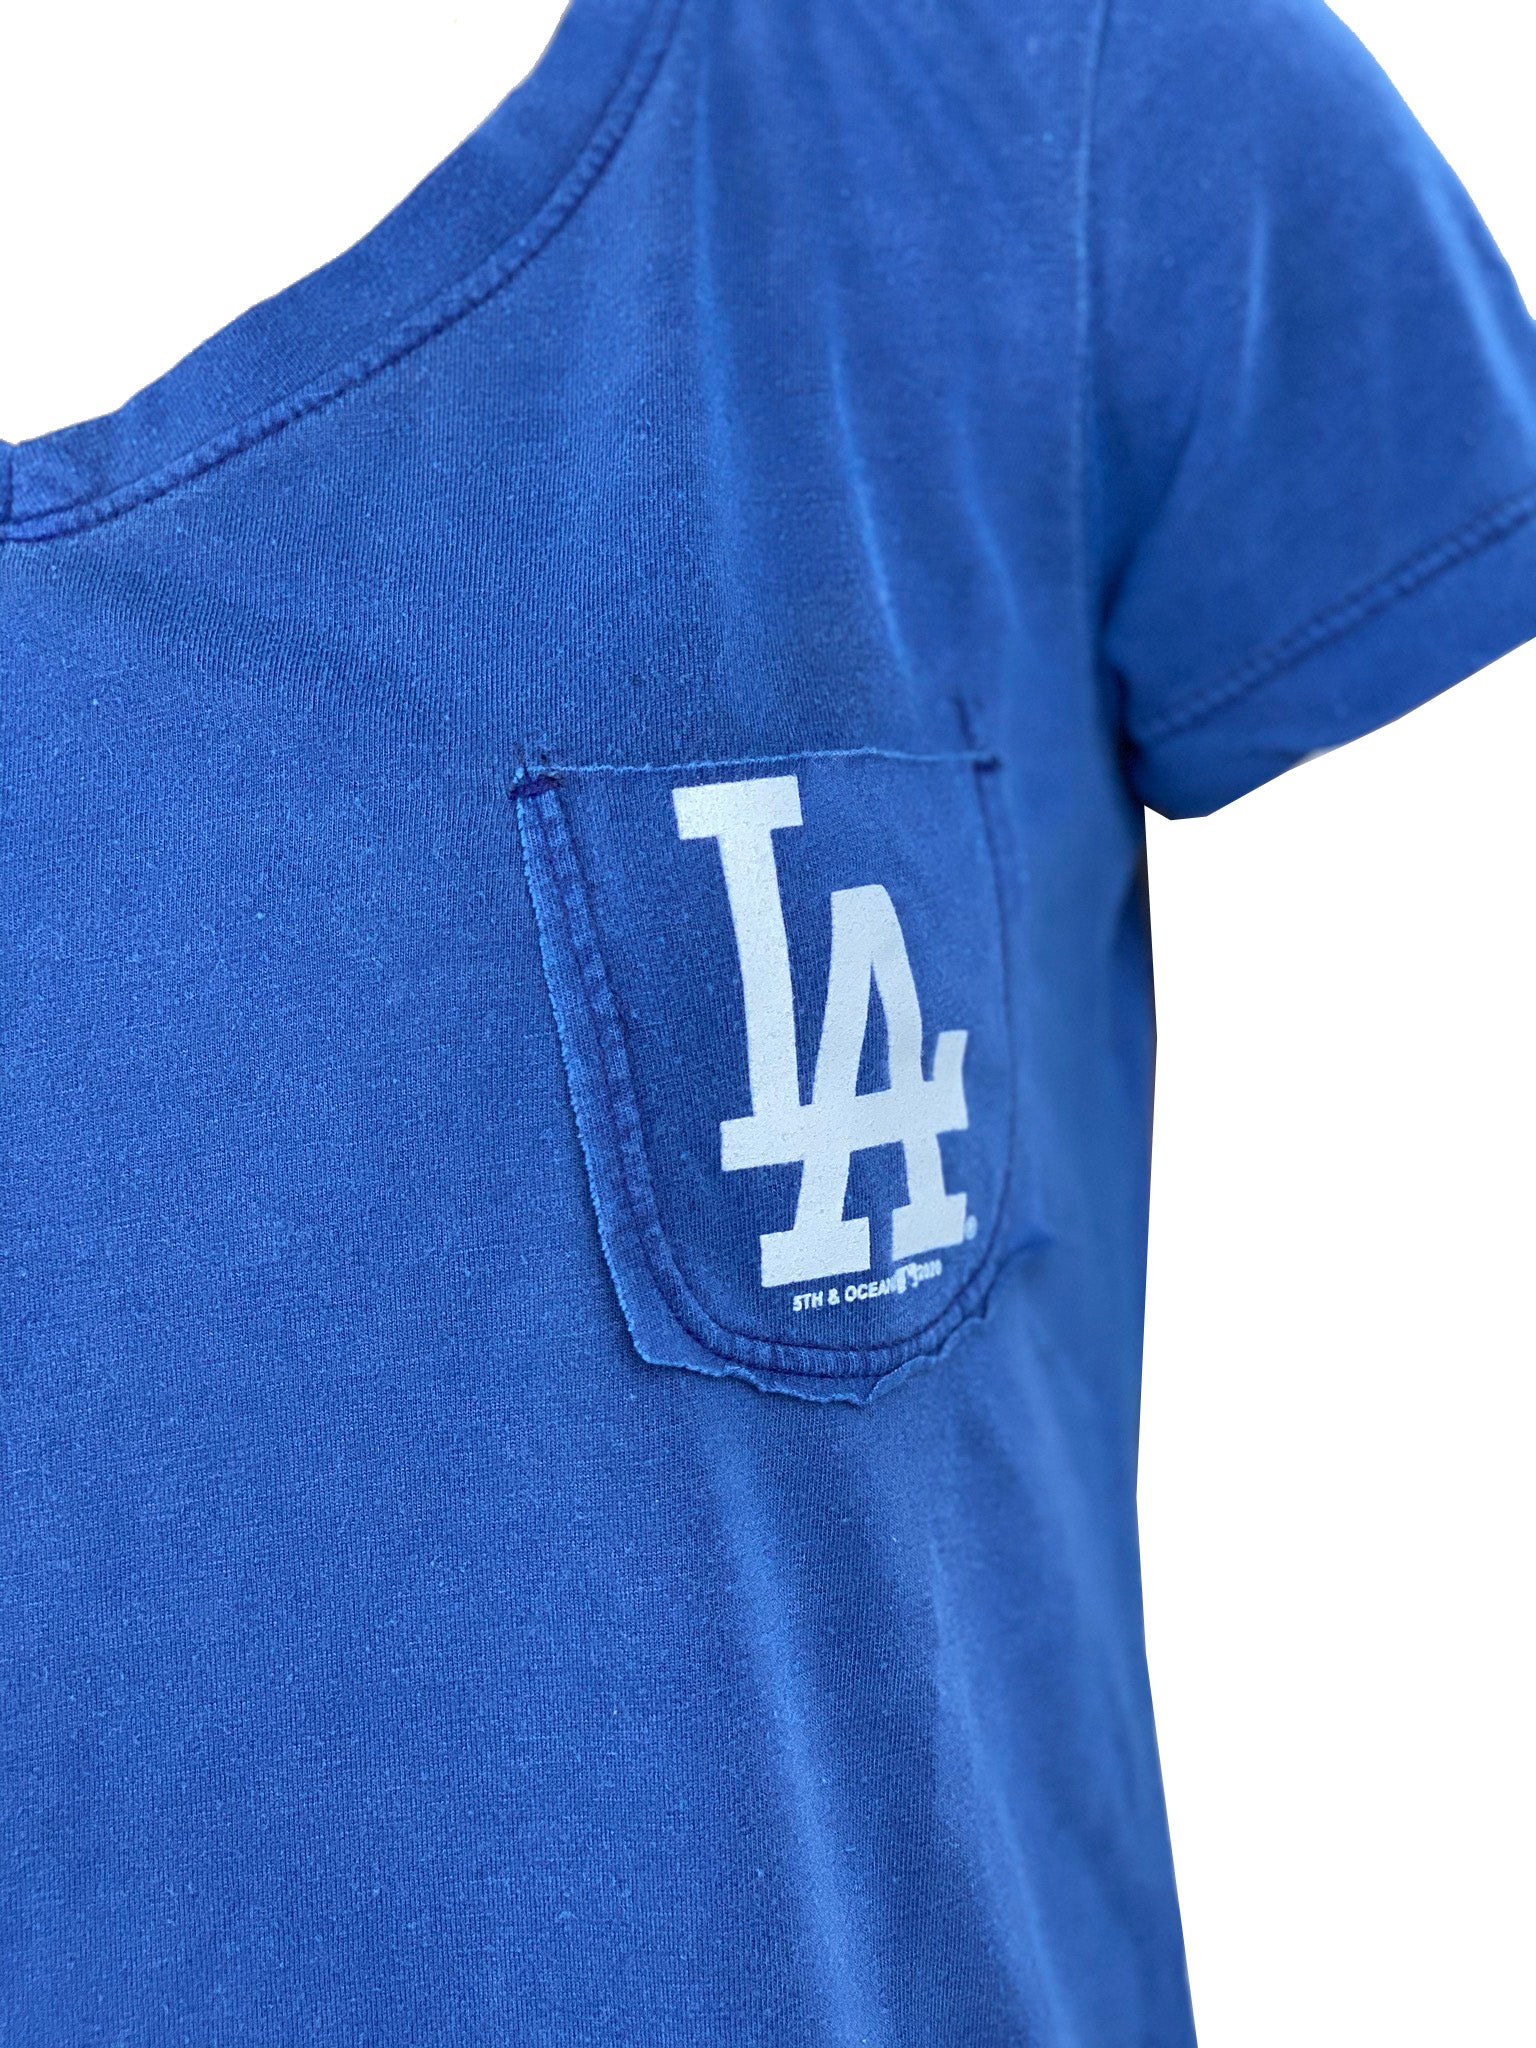 FIFTH&OCEAN Los Angeles Dodgers Women's Pocket Logo T-Shirt 20 Blu / S